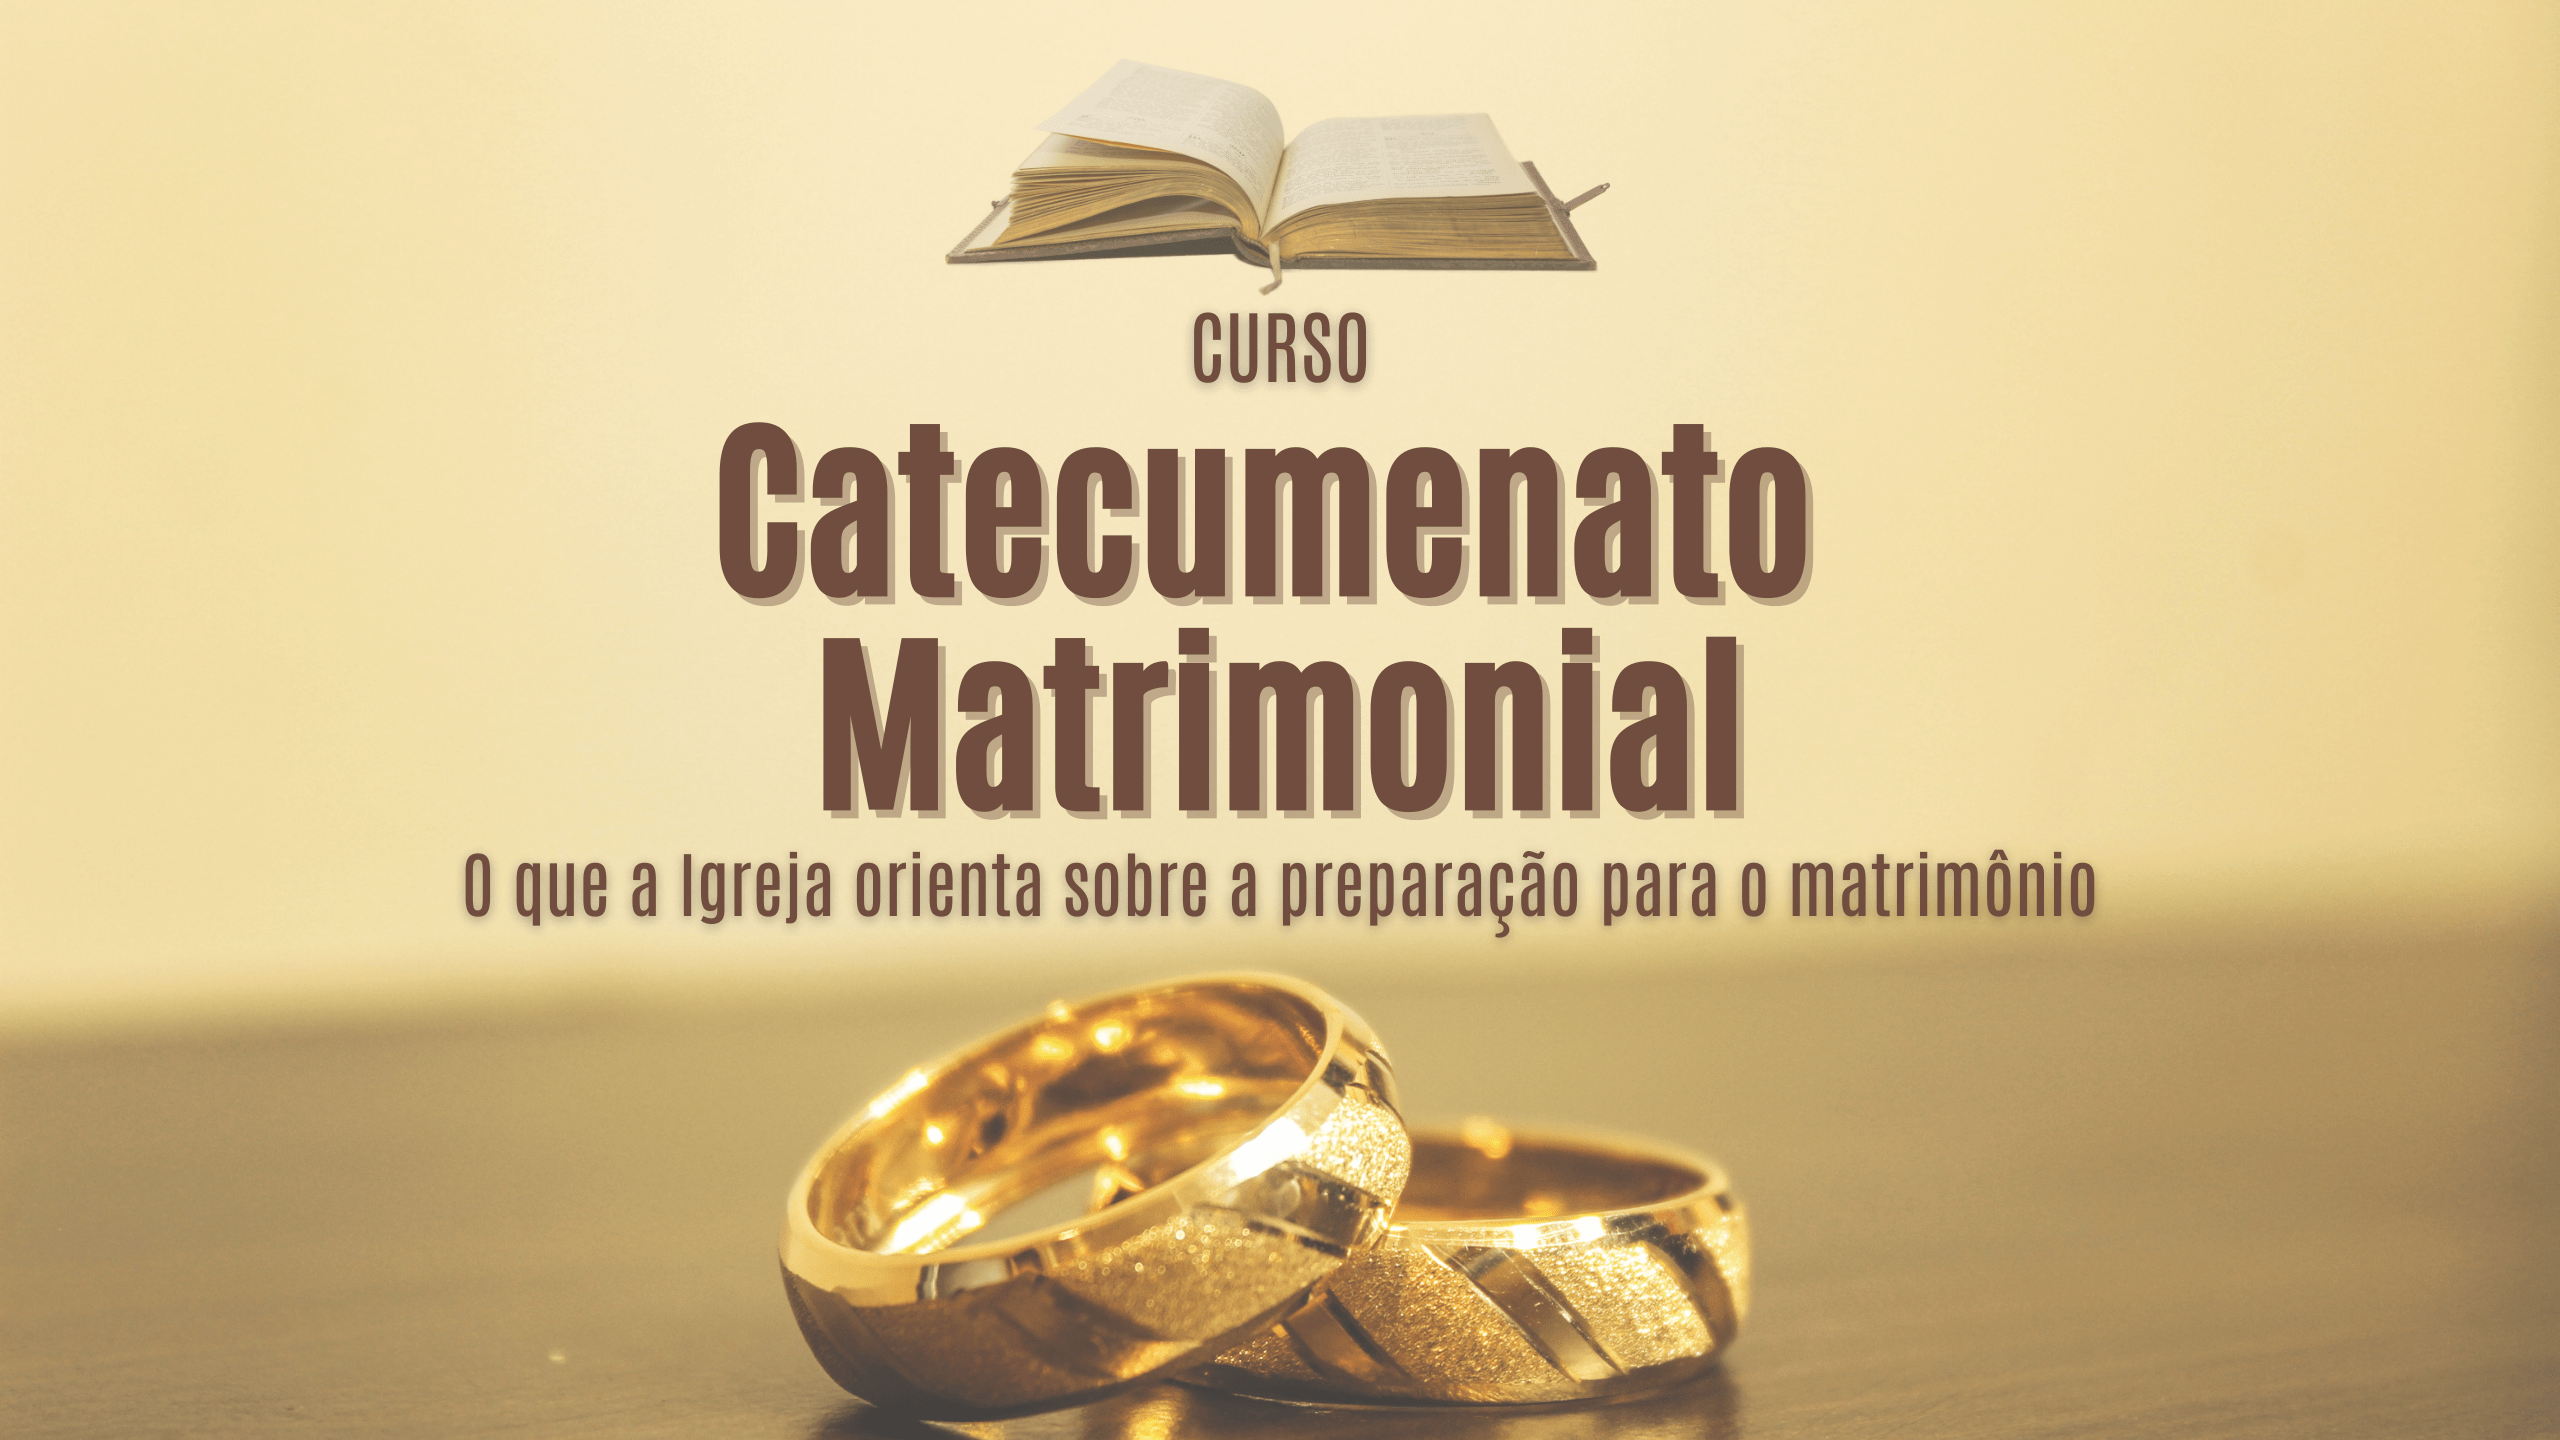 Catecumenato Matrimonial